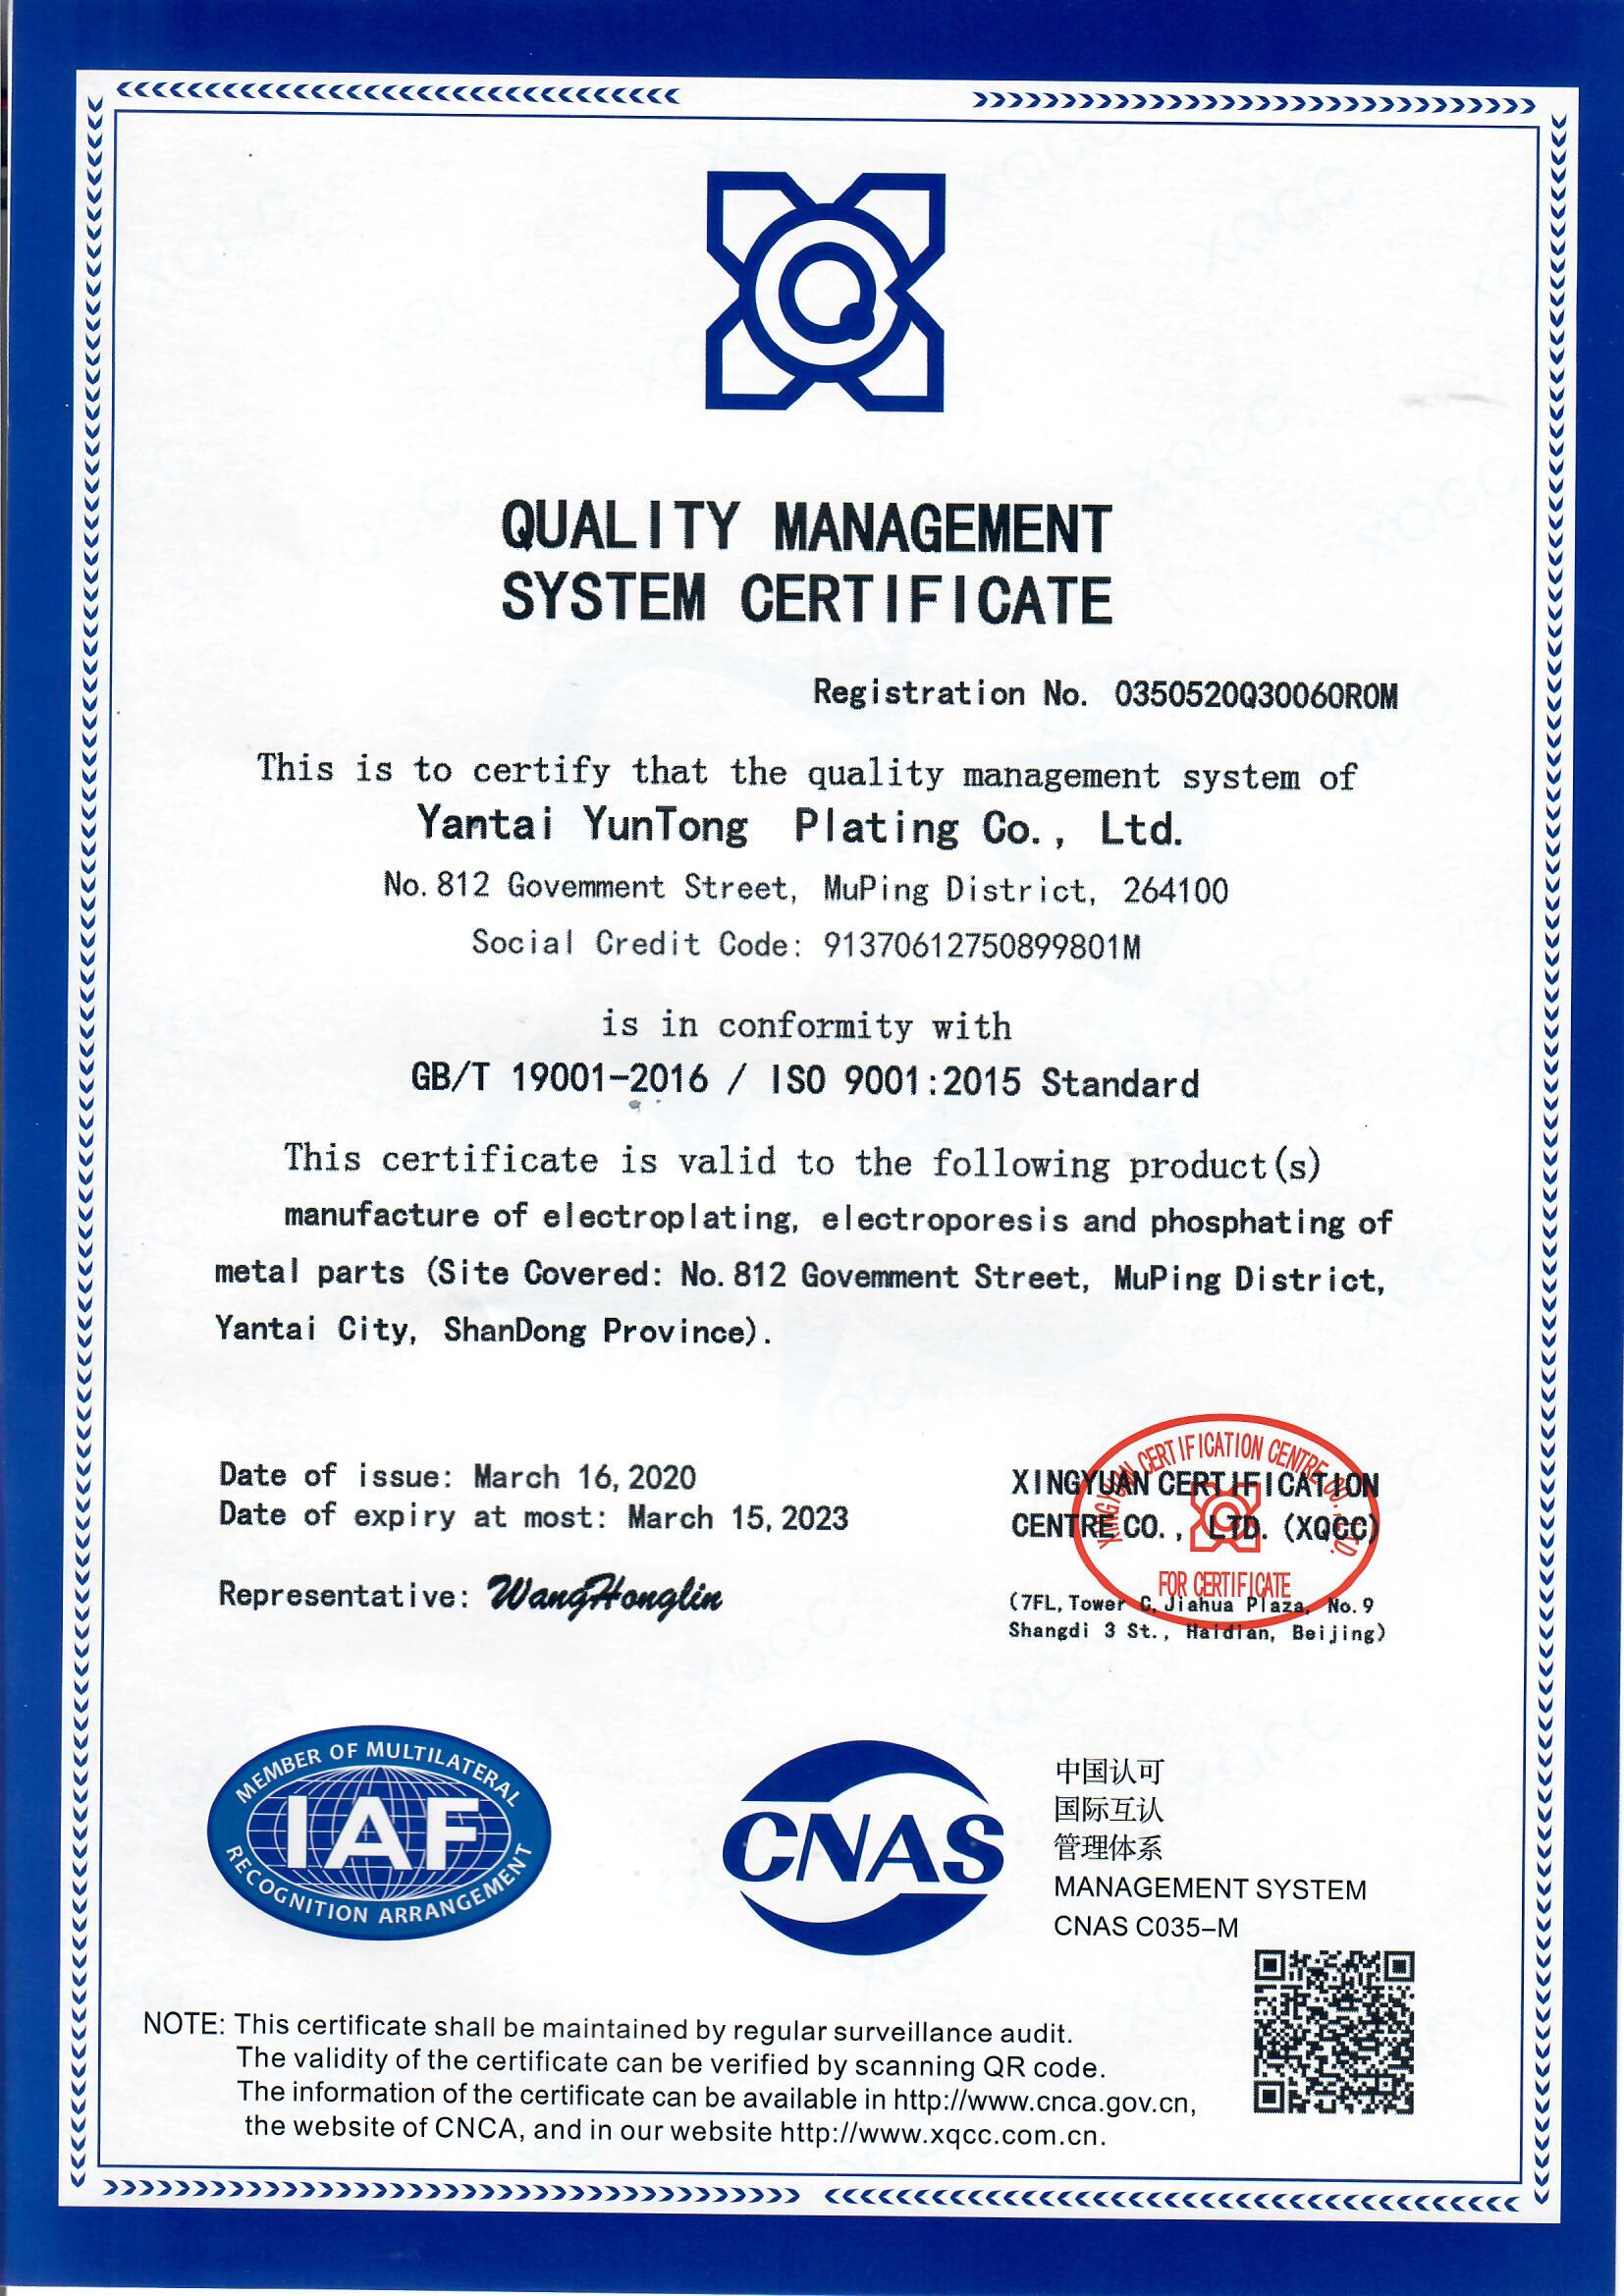 9001质量体系认证证书英文版（2020兴源）.jpg